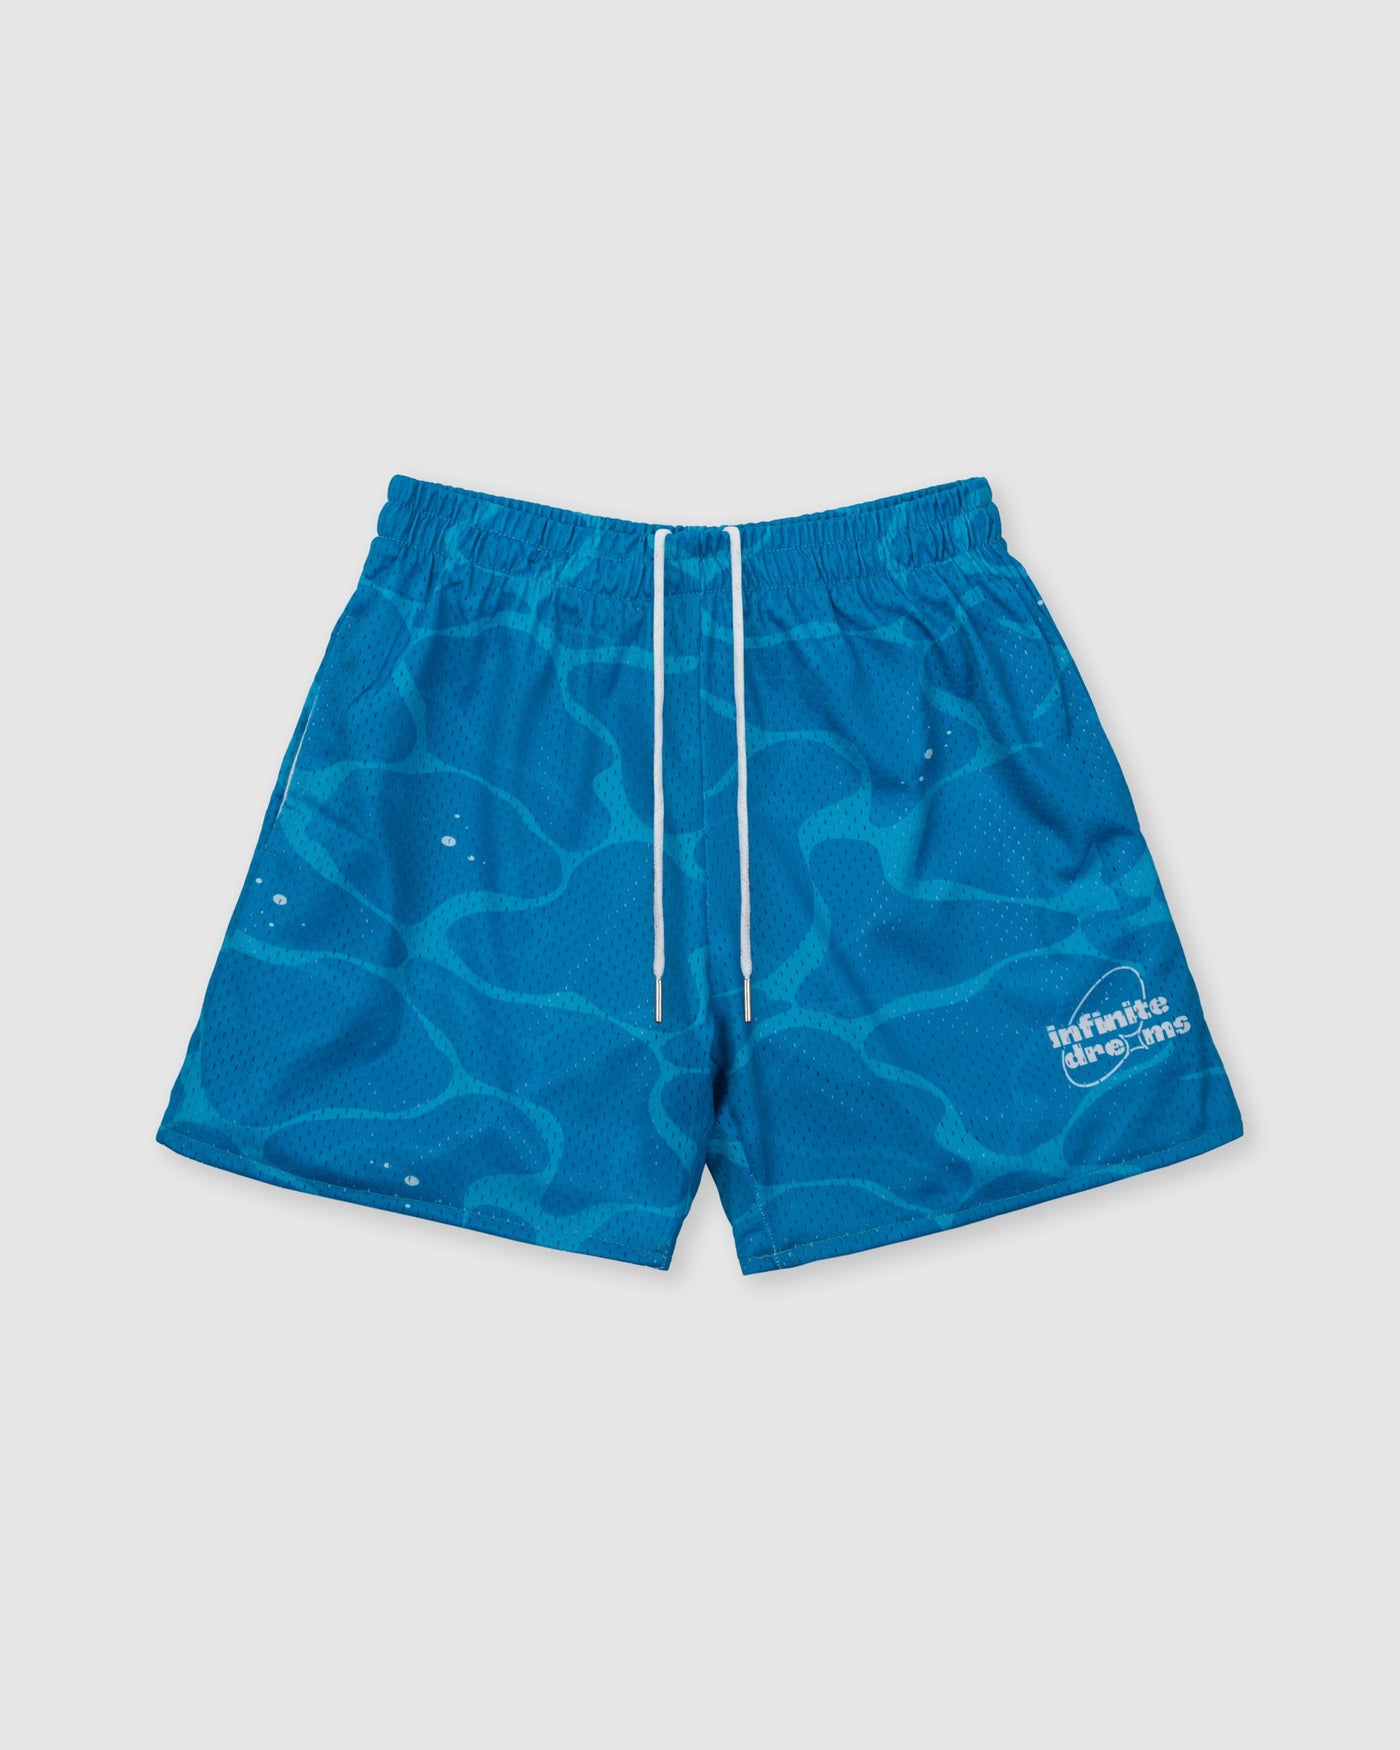 Infinite Dreams Mesh Shorts (Aqua)